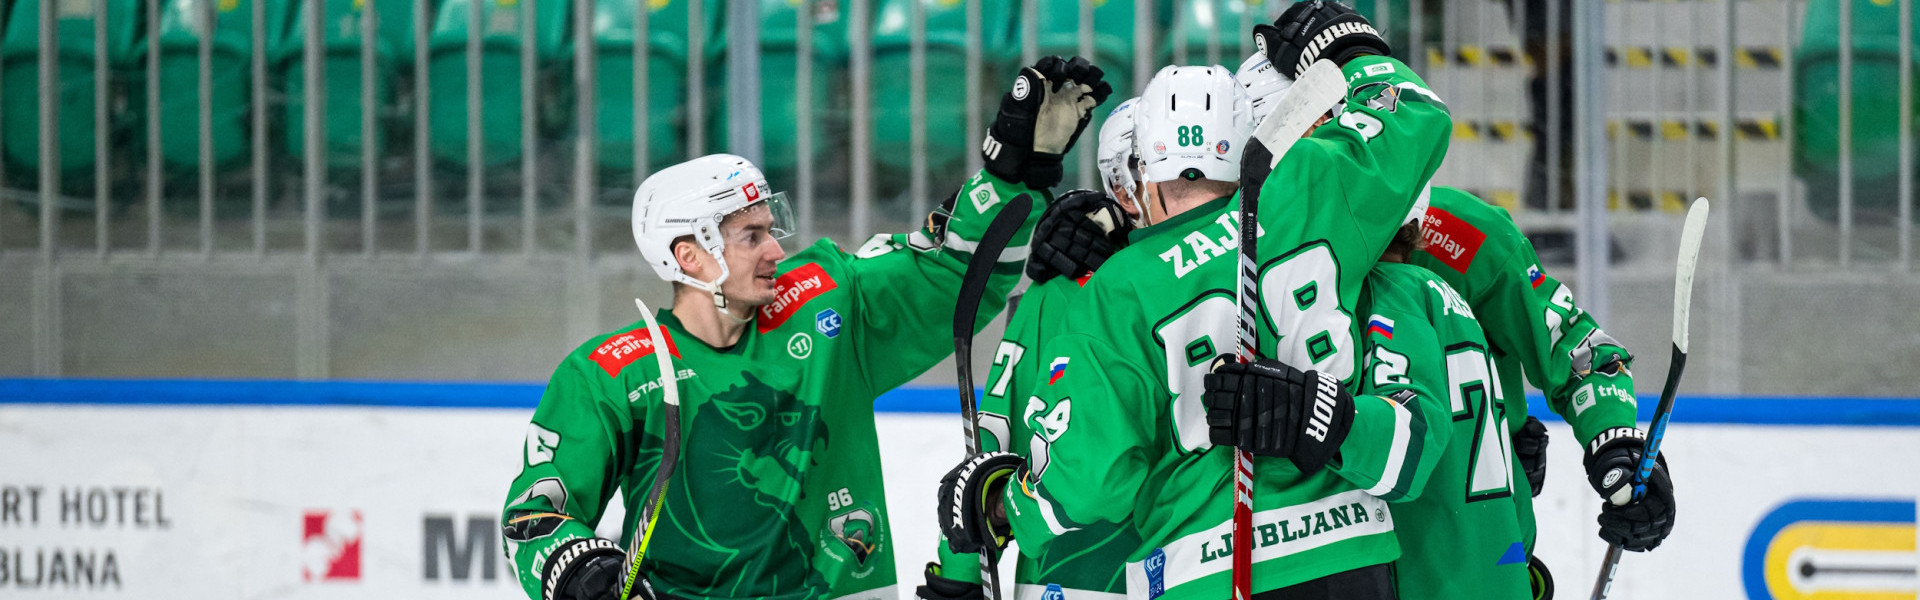 Die Grünen Drachen aus der slowenischen Hauptstadt spielten bislang eine gute Saison und werden in den Pre-Playoffs um die Viertelfinalqualifikation rittern